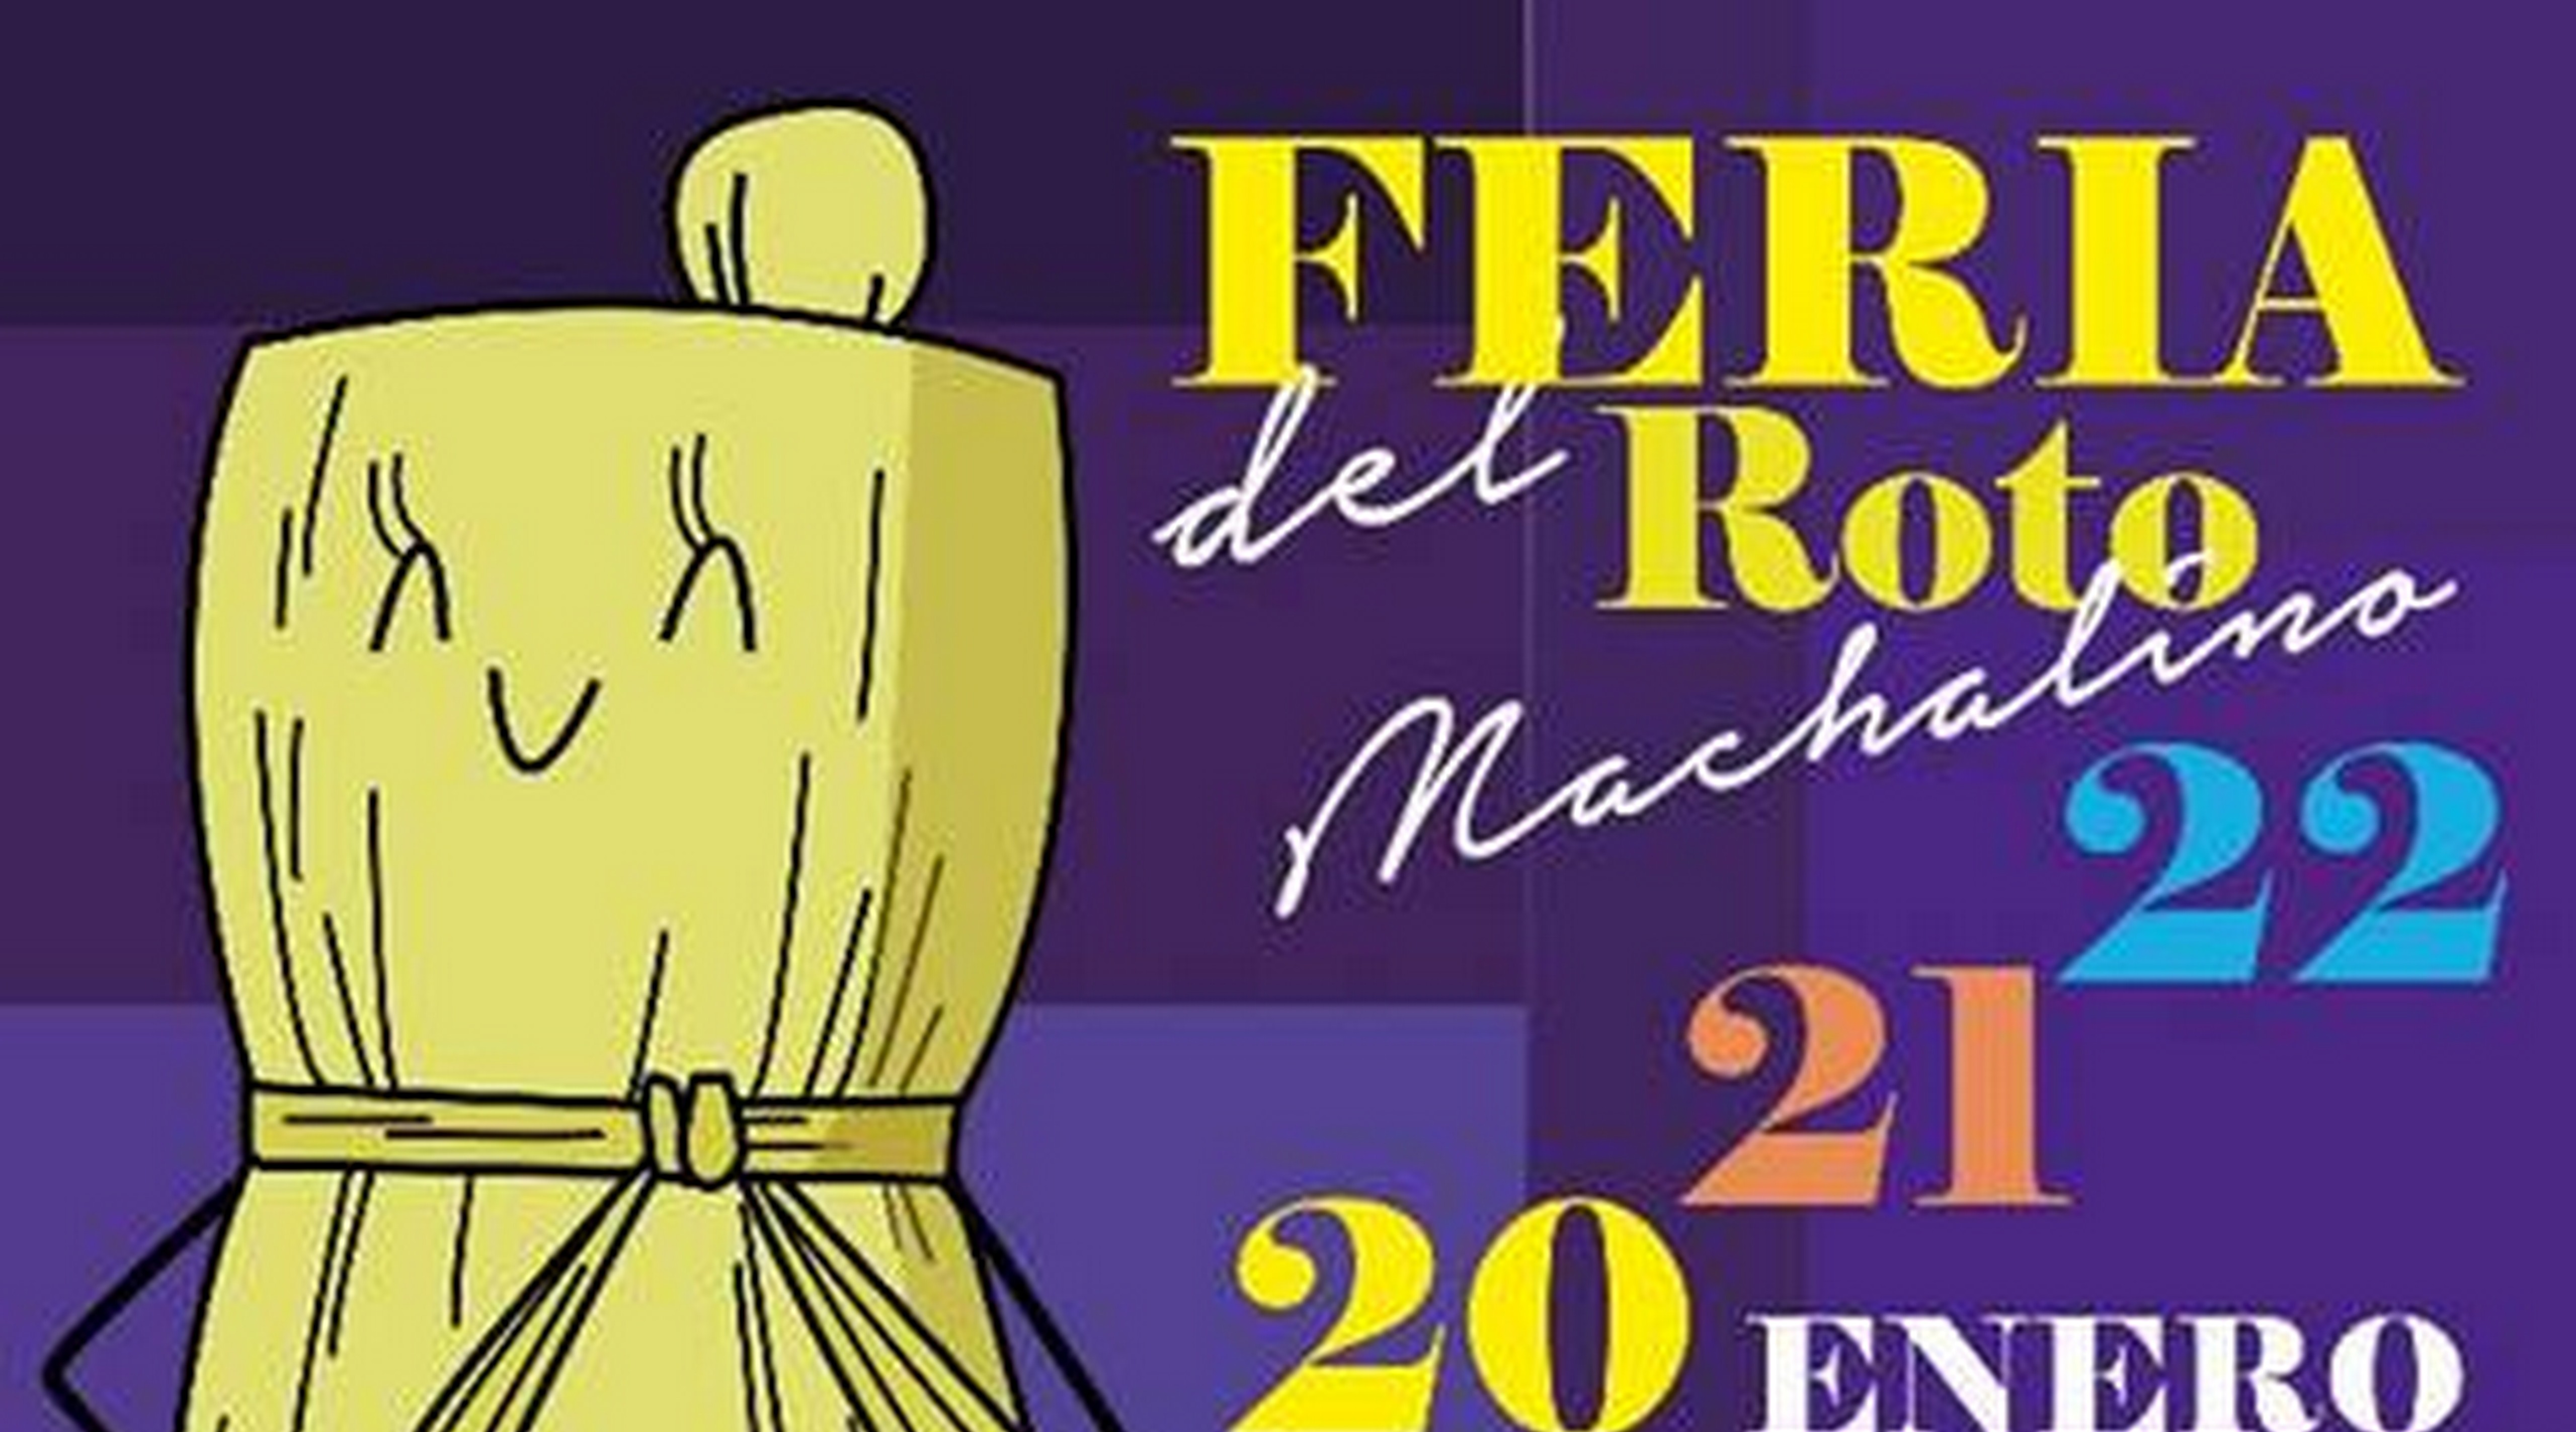 Este fin de semana se realizará la “Feria del Roto Machalino”